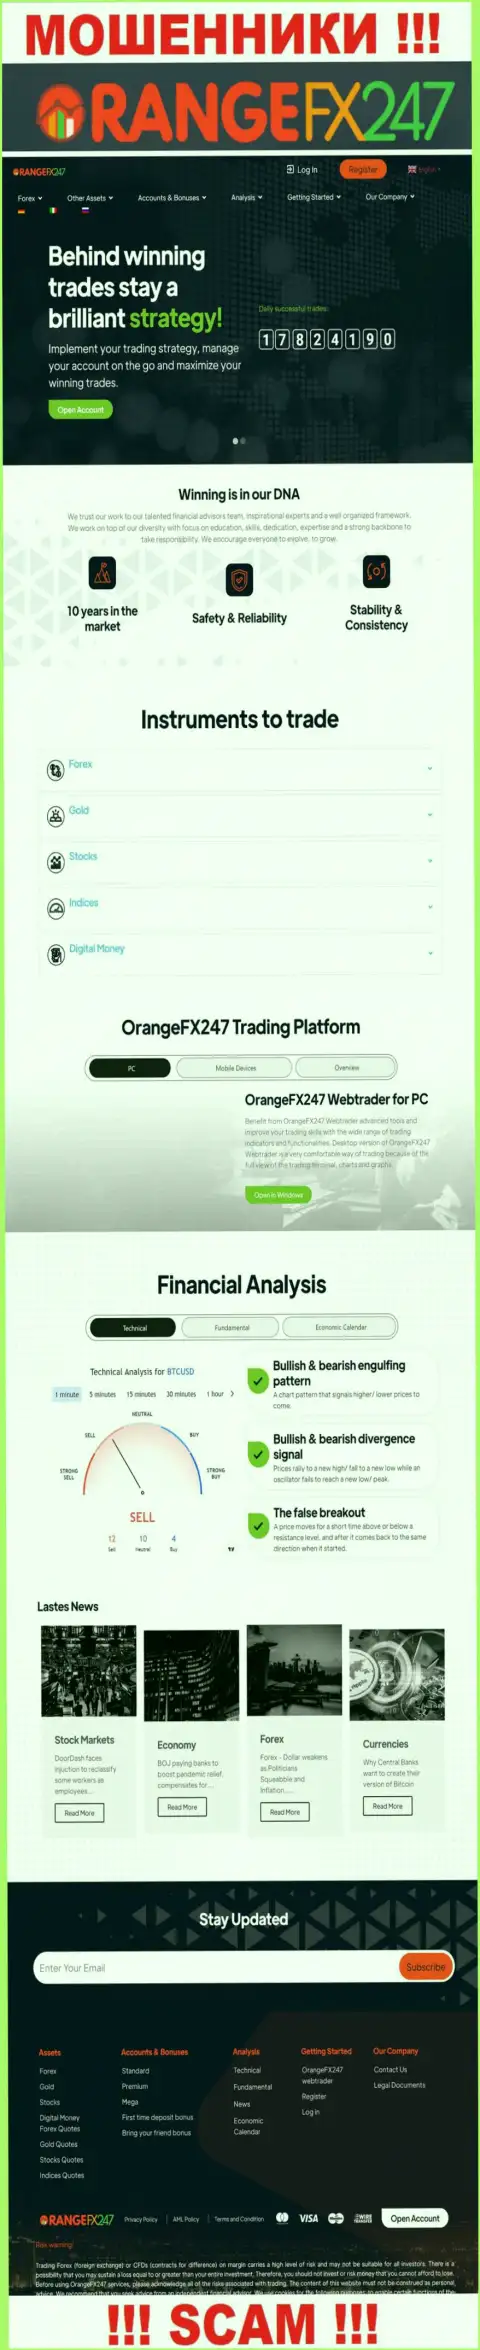 Главная страница официального сайта мошенников OrangeFX247